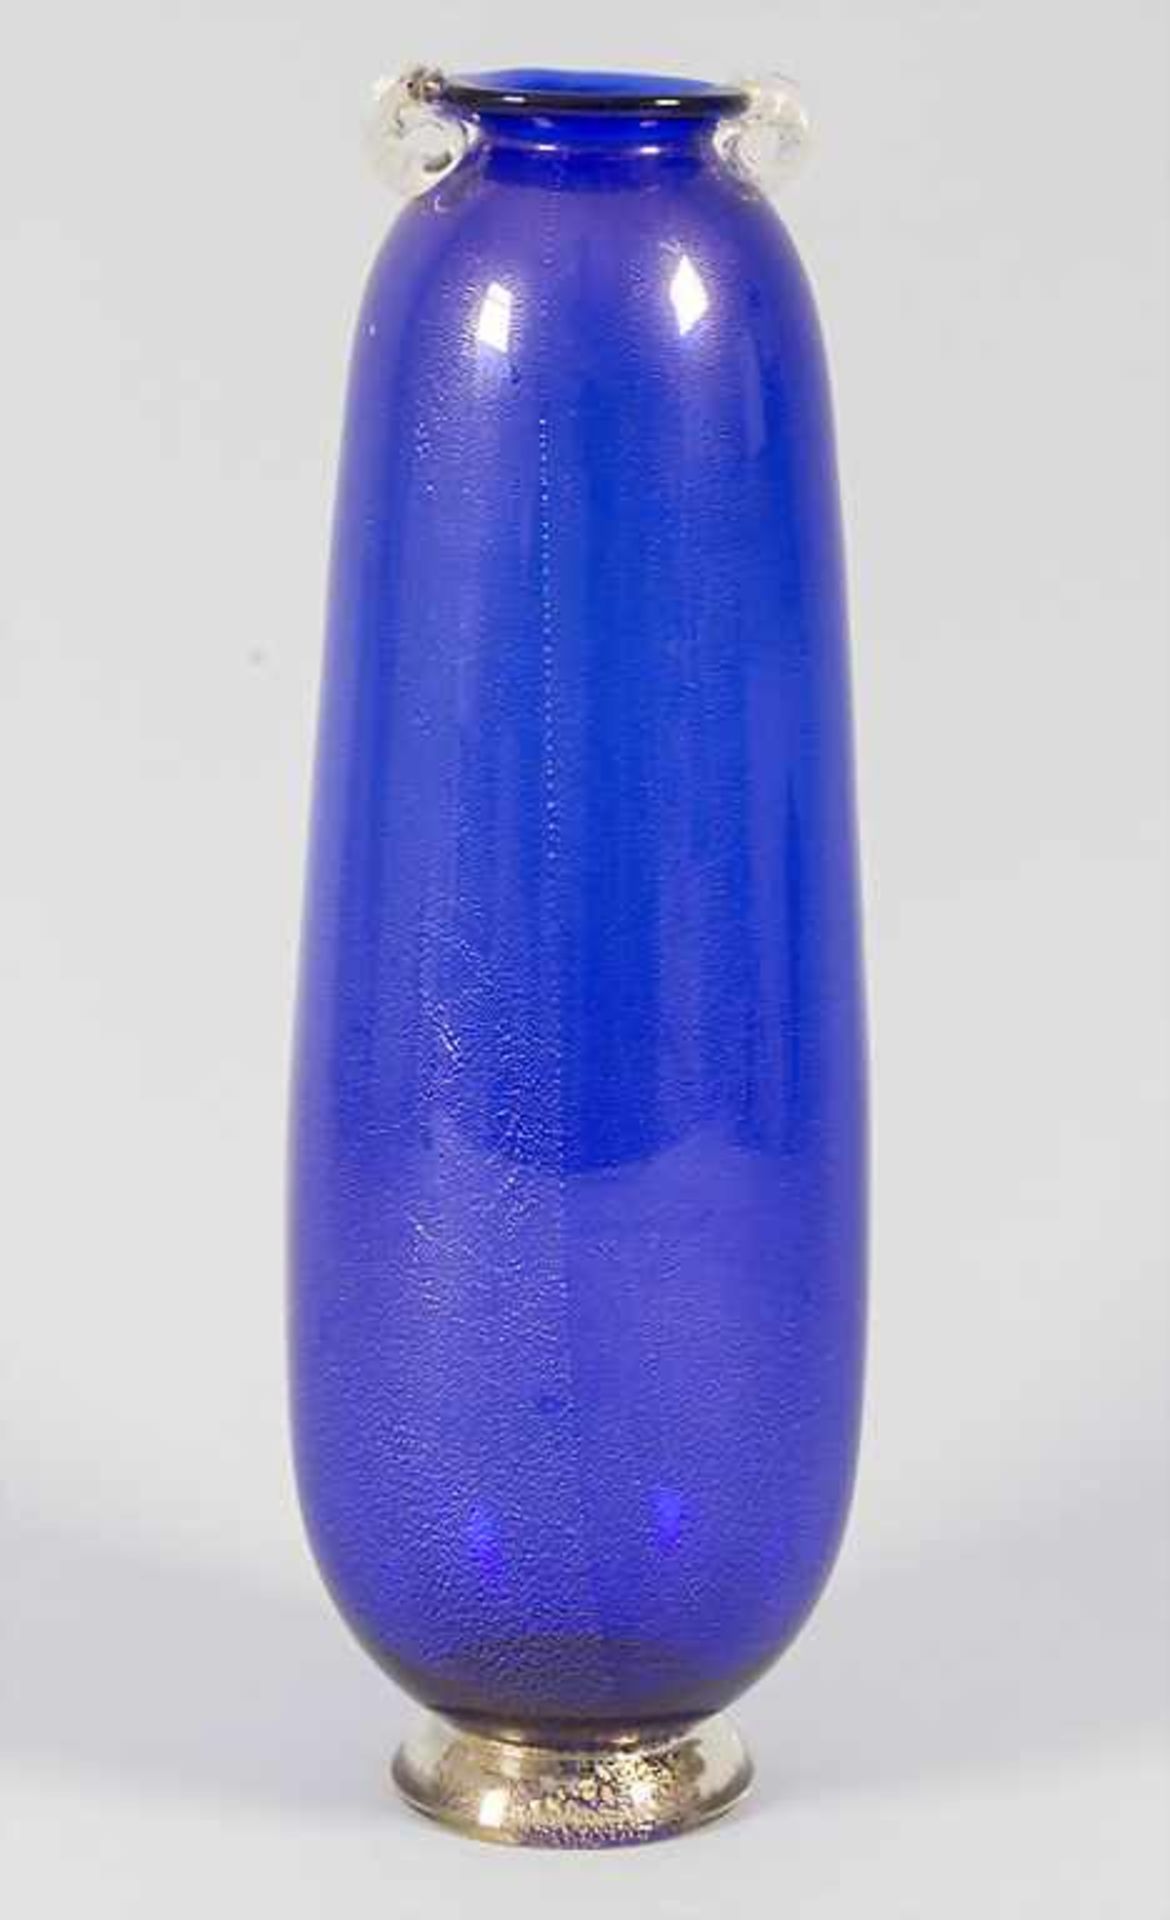 Glasziervase / A decorative glass vase, wohl AVEM (Arte Vetraria Muranese), Murano, 40/50er Jahre, - Bild 3 aus 6